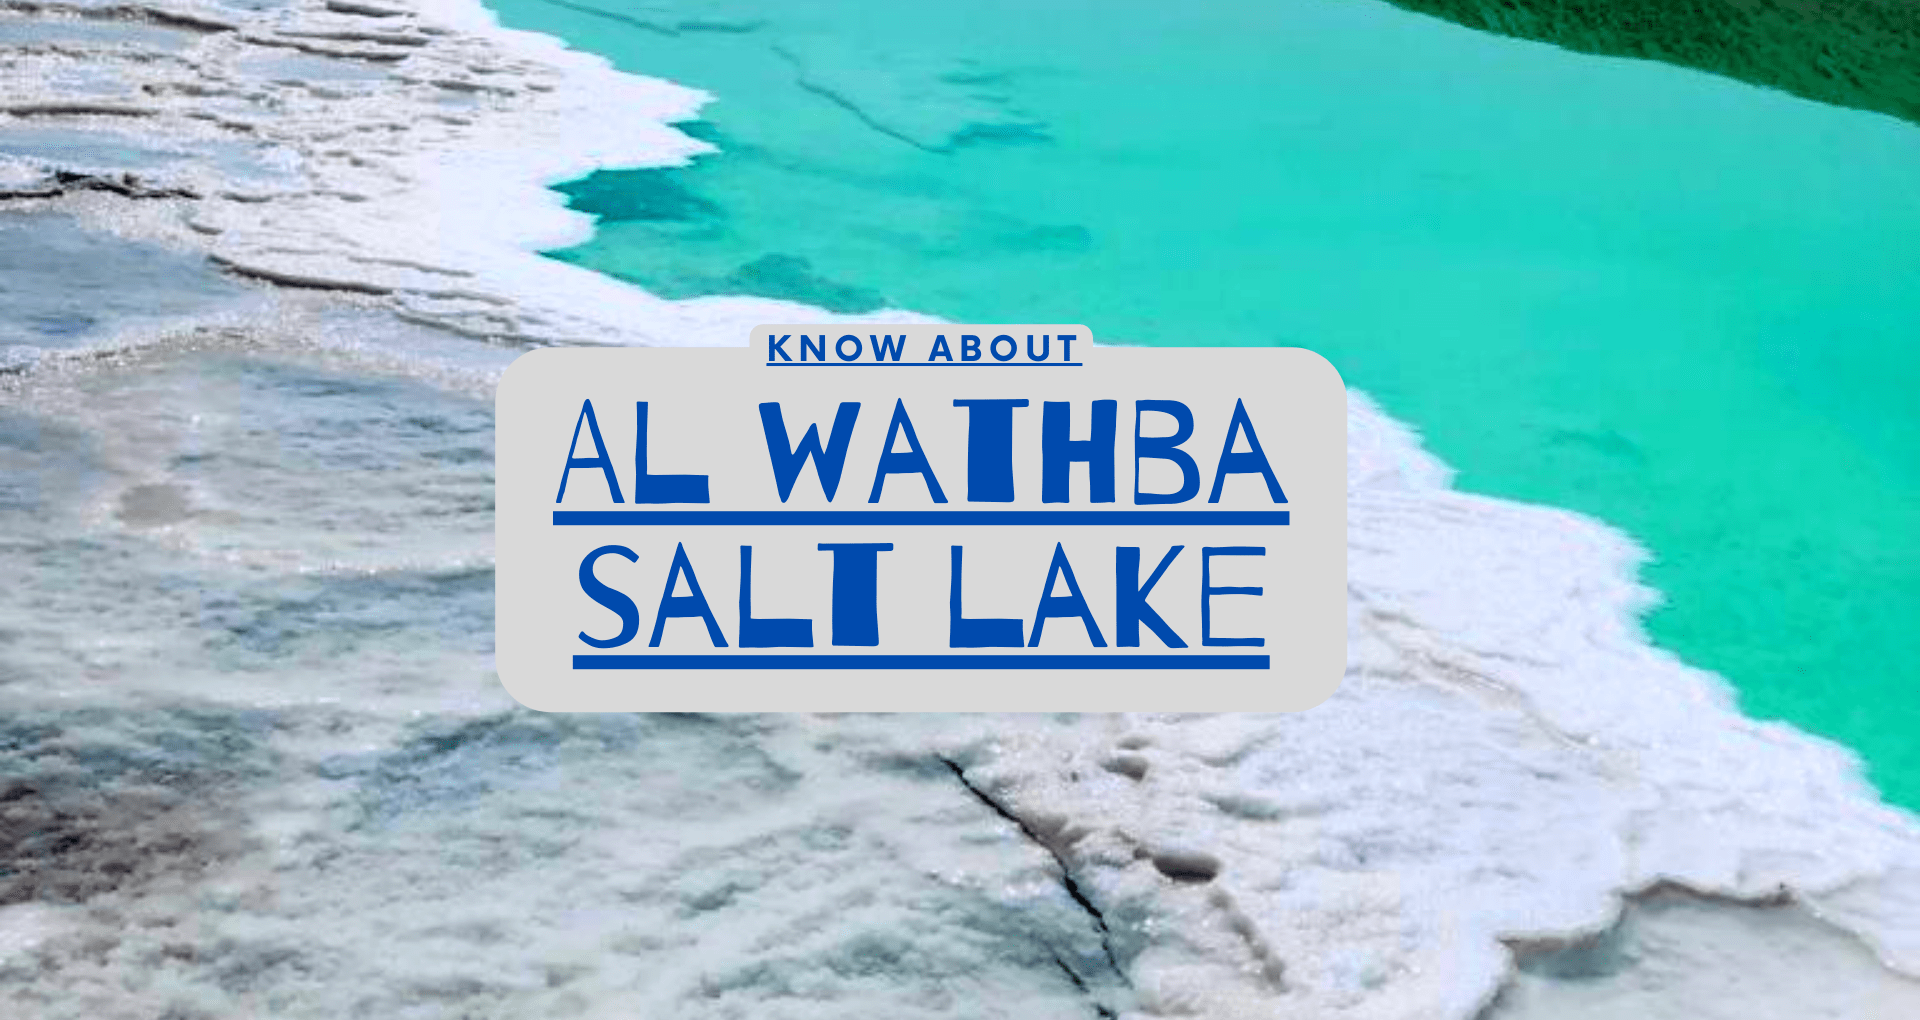 Al Wathba Salt Lake, Fcats and Amazing Actiovities